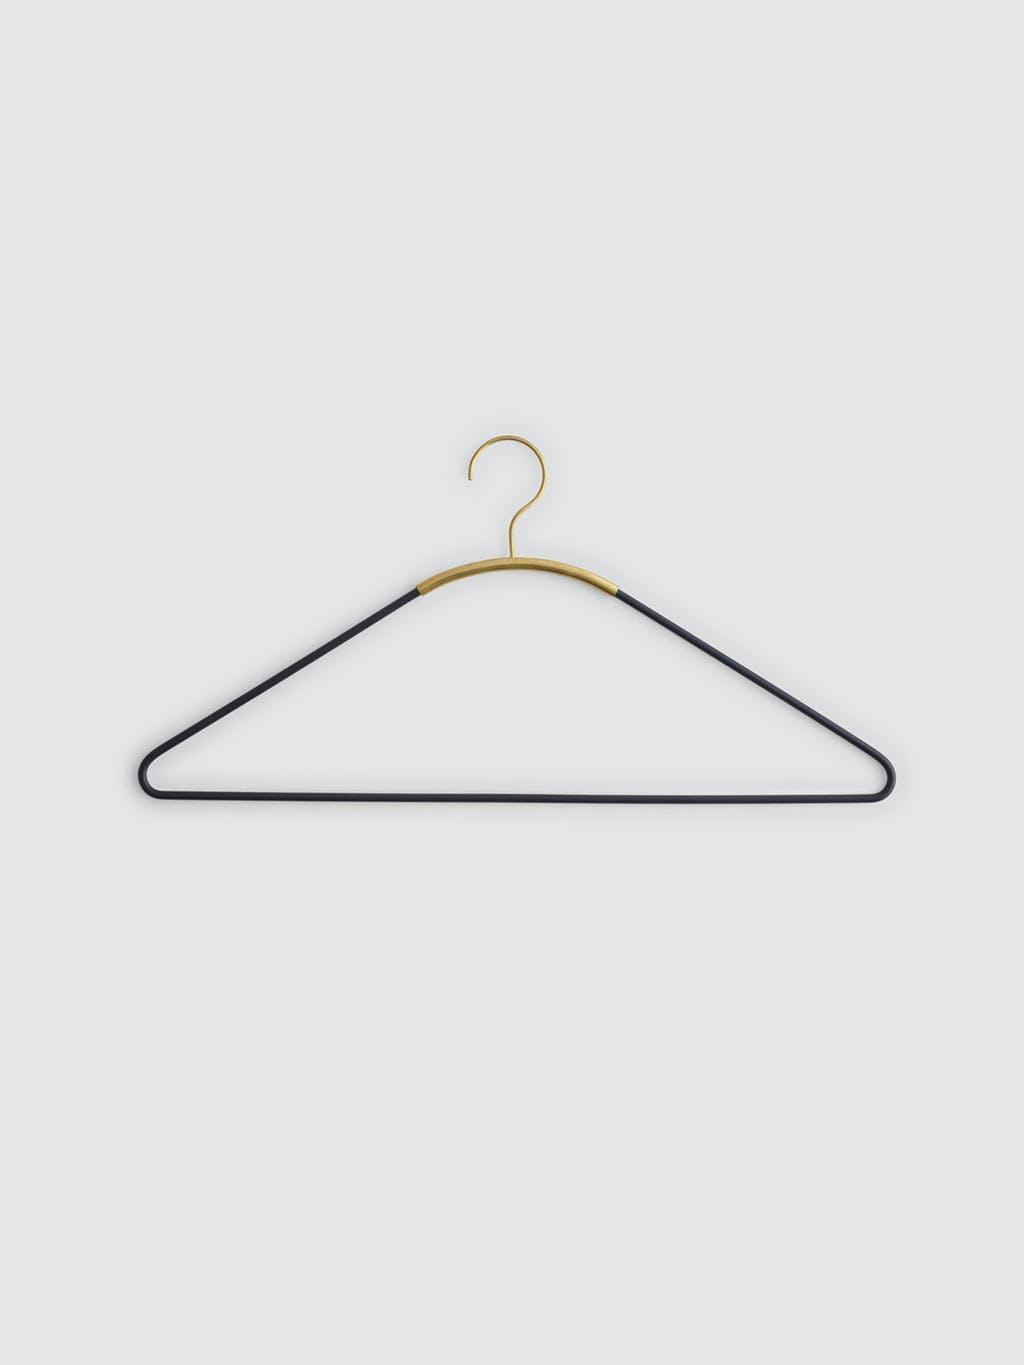 Ava Clothes Hanger